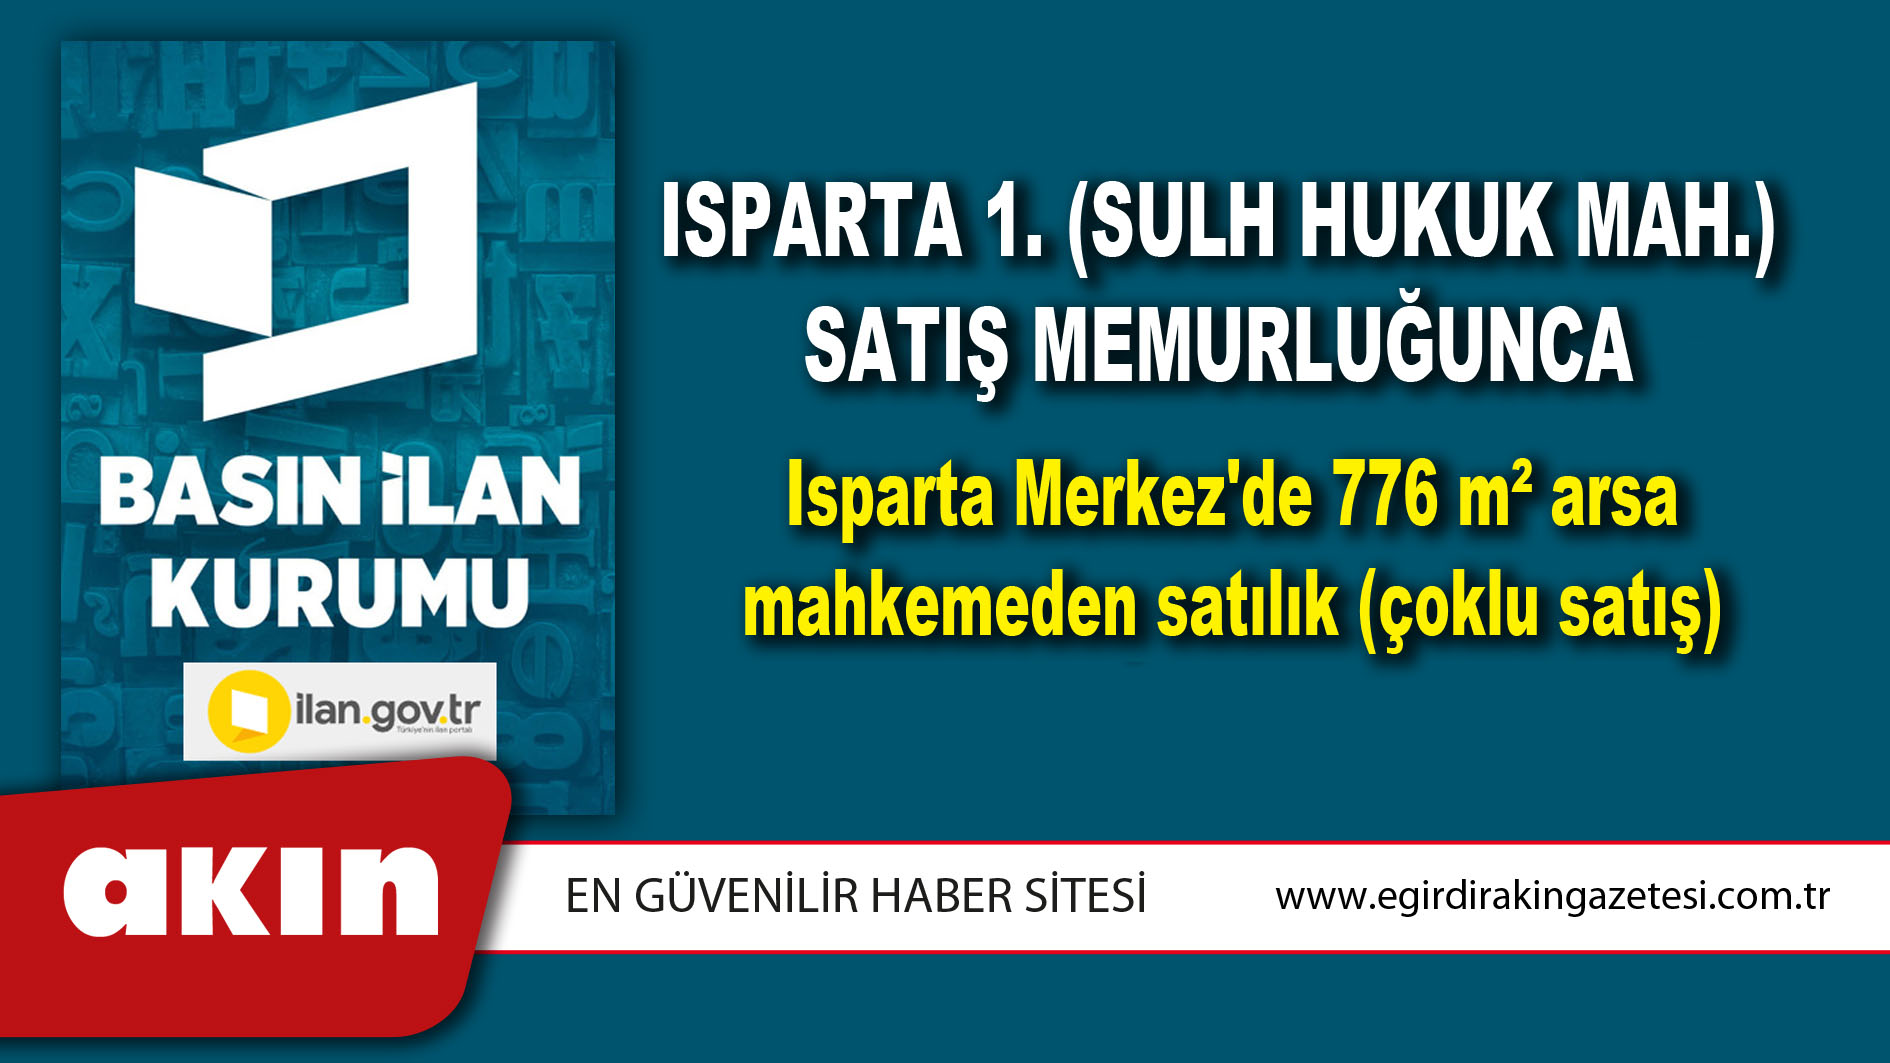 Isparta 1. (Sulh Hukuk Mah.) Satış Memurluğunca Isparta Merkez'de 776 m² arsa mahkemeden satılık (çoklu satış)